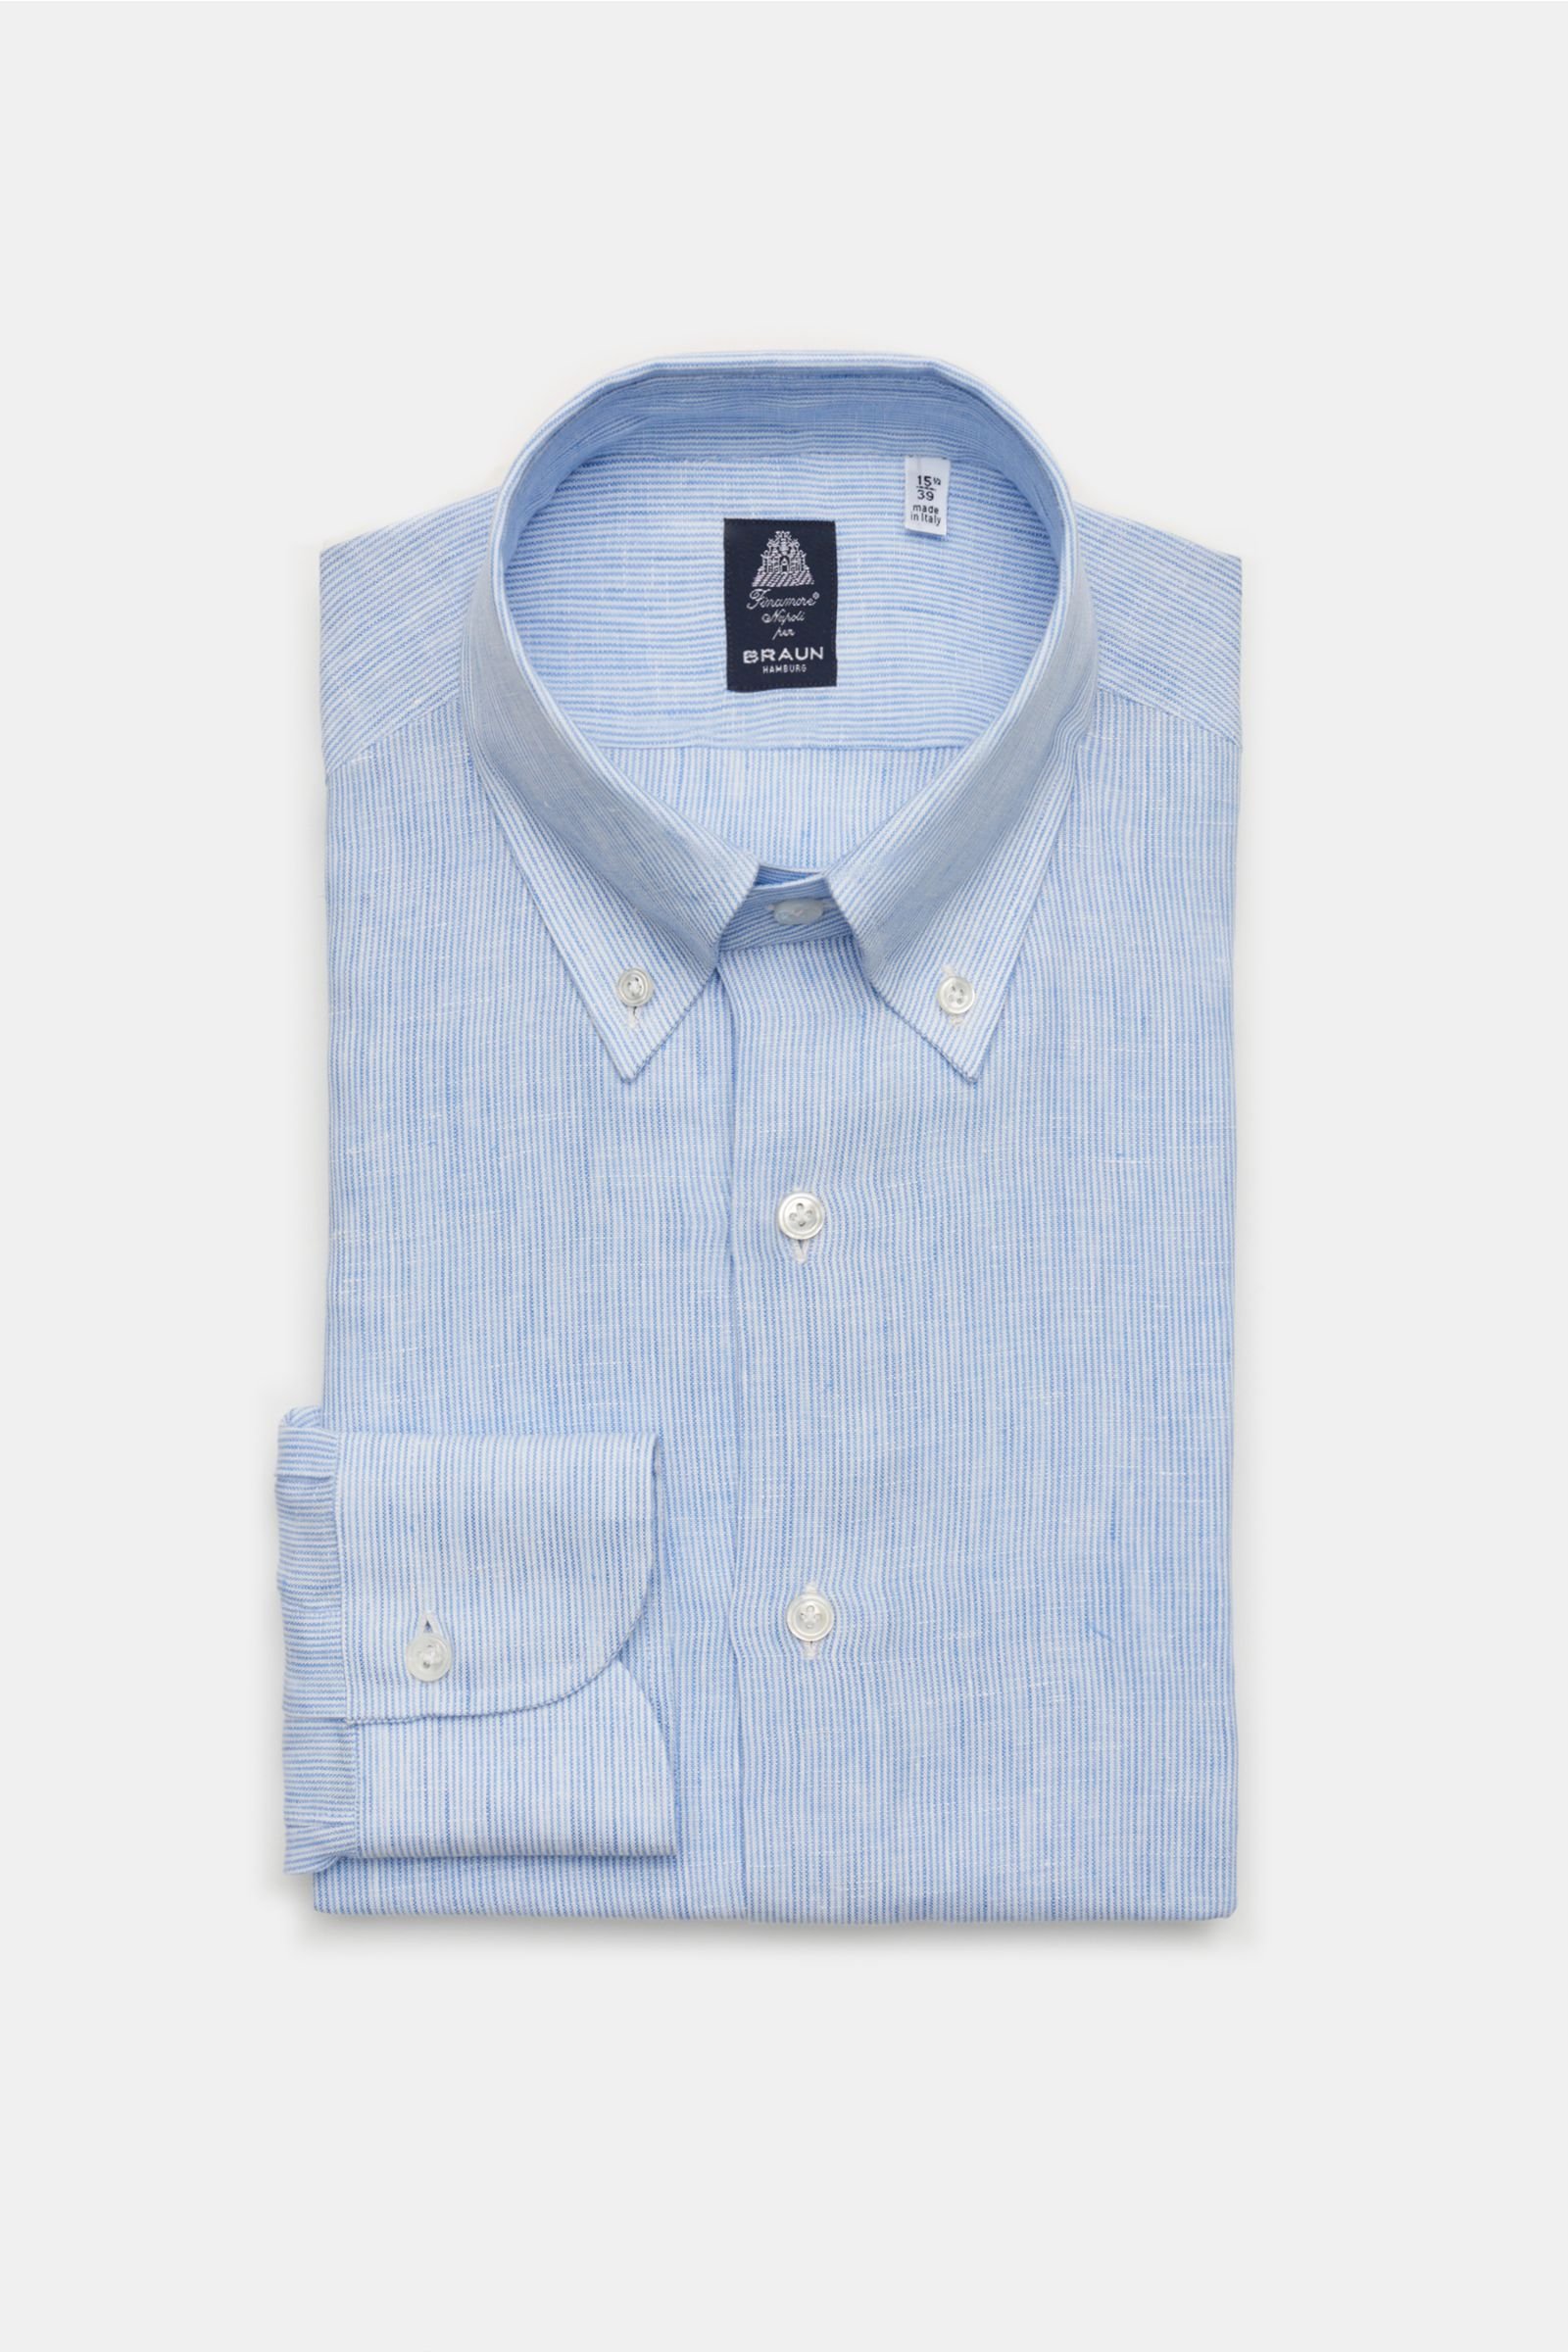 Leinenhemd 'Leonardo Napoli' Button-Down-Kragen hellblau/weiß gestreift